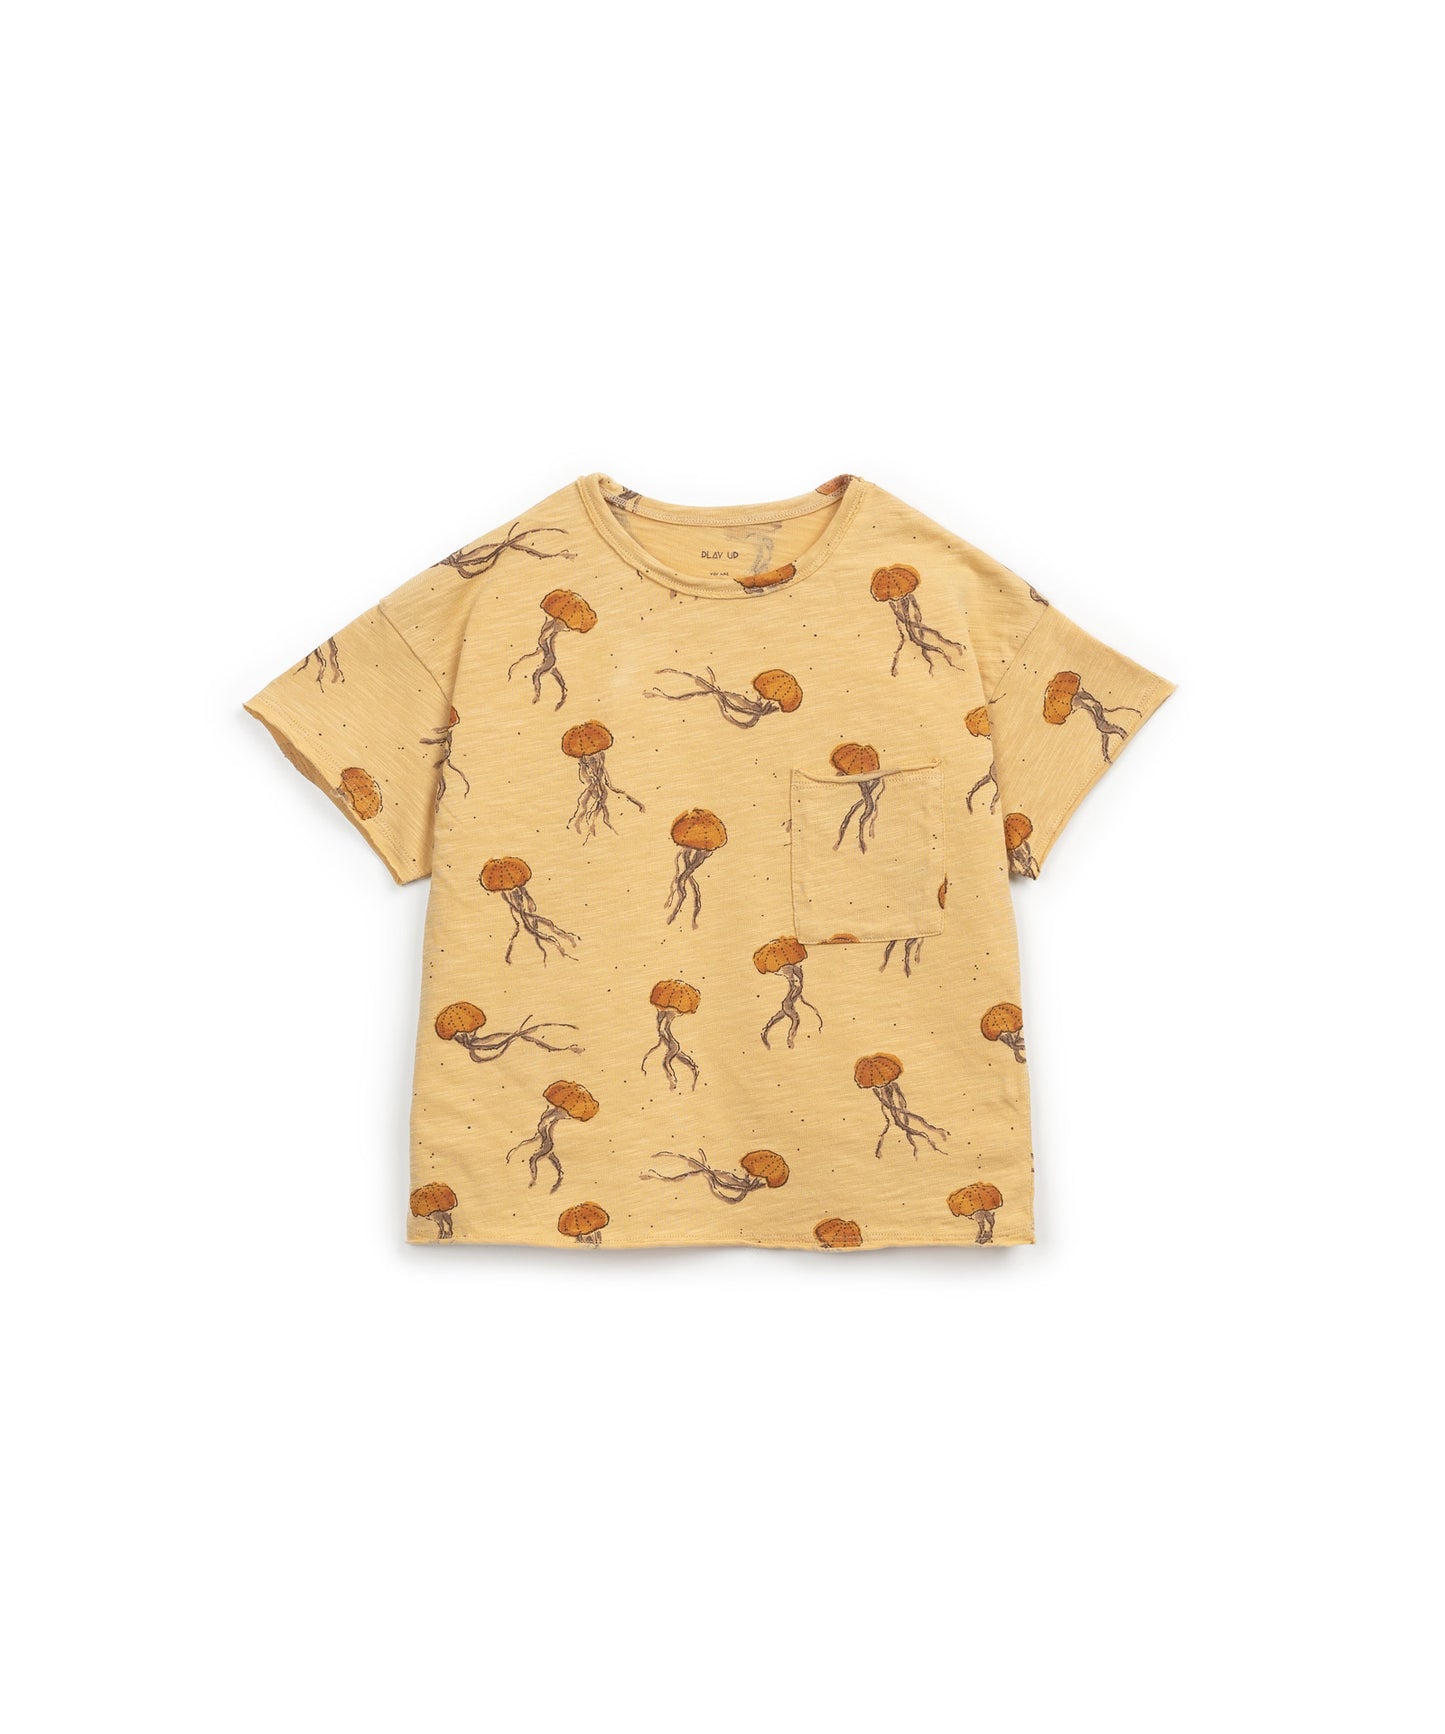 T-shirt alforrecas amarela - Play Up